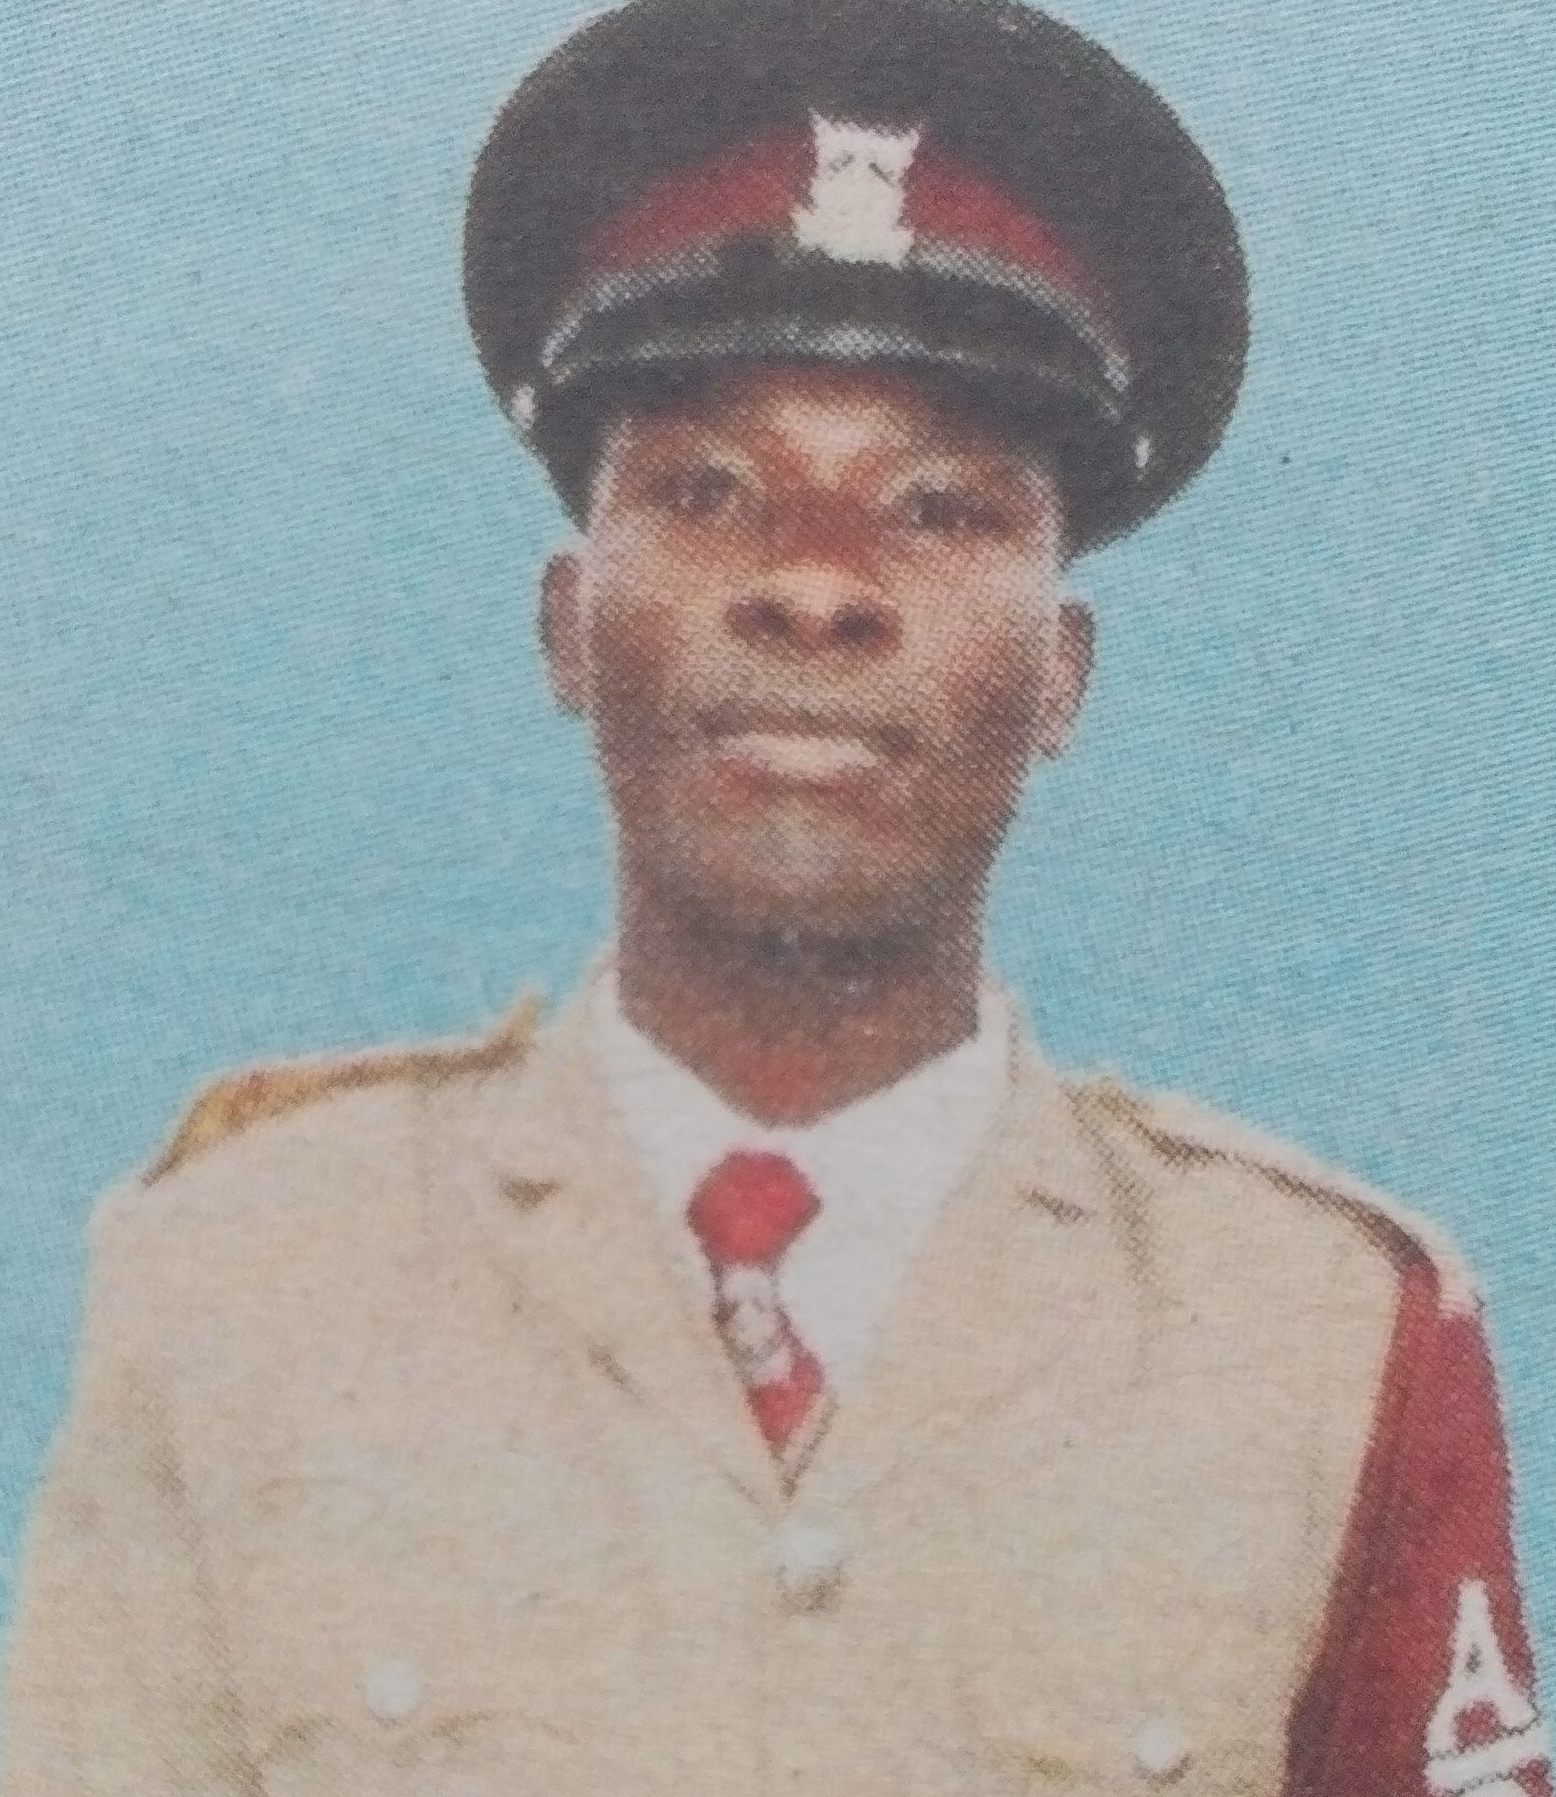 Obituary Image of Richard Musava Kimanzi